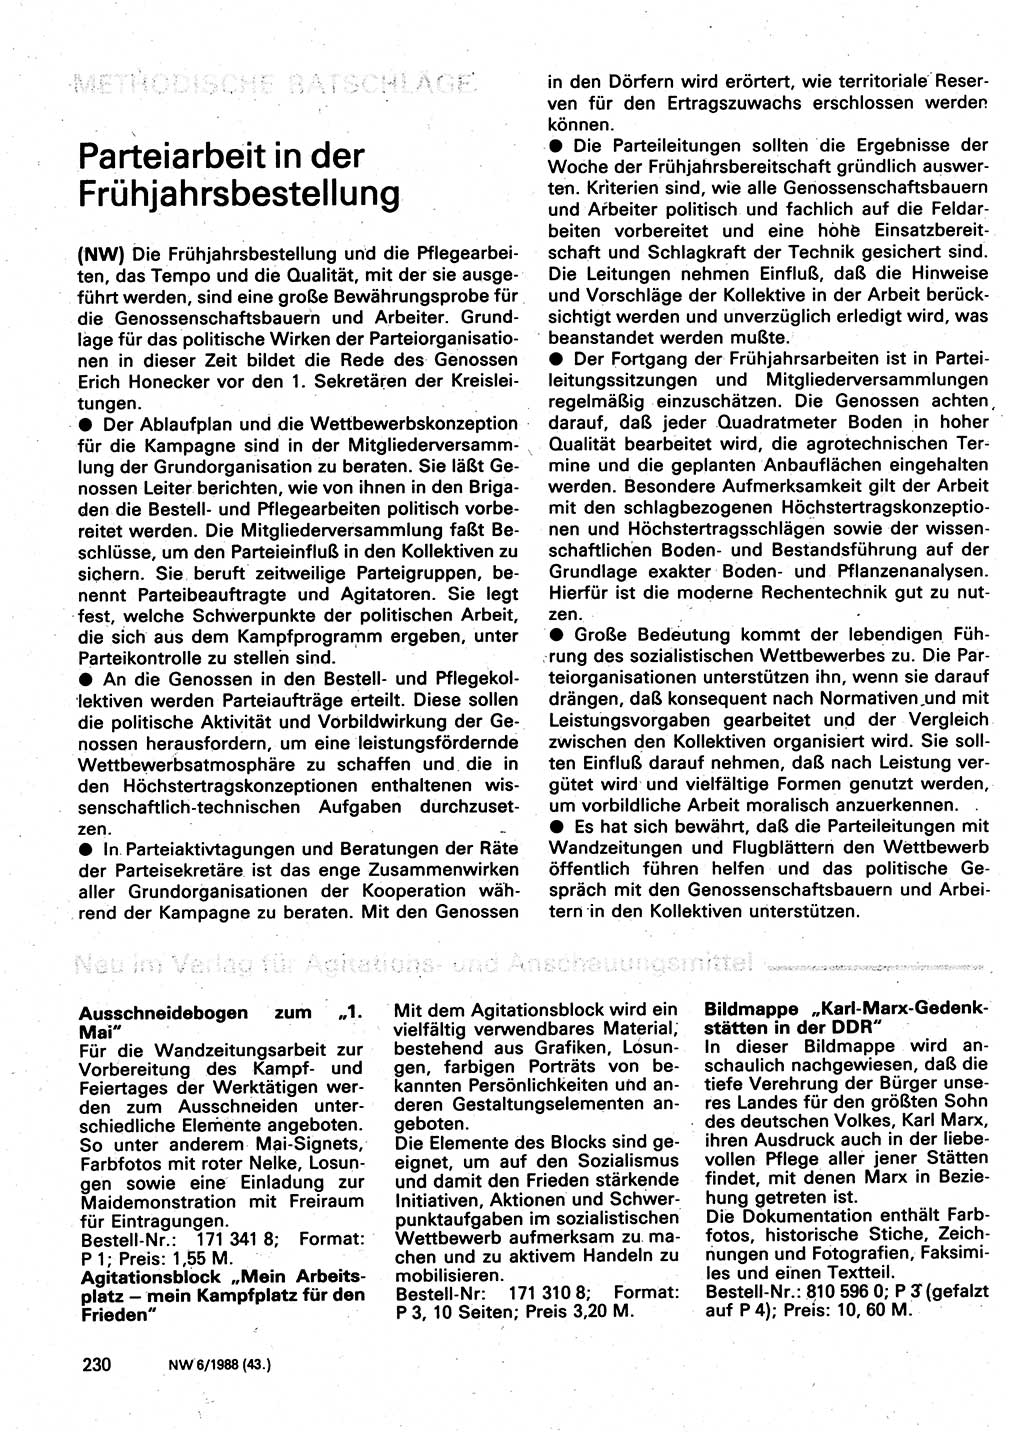 Neuer Weg (NW), Organ des Zentralkomitees (ZK) der SED (Sozialistische Einheitspartei Deutschlands) für Fragen des Parteilebens, 43. Jahrgang [Deutsche Demokratische Republik (DDR)] 1988, Seite 230 (NW ZK SED DDR 1988, S. 230)